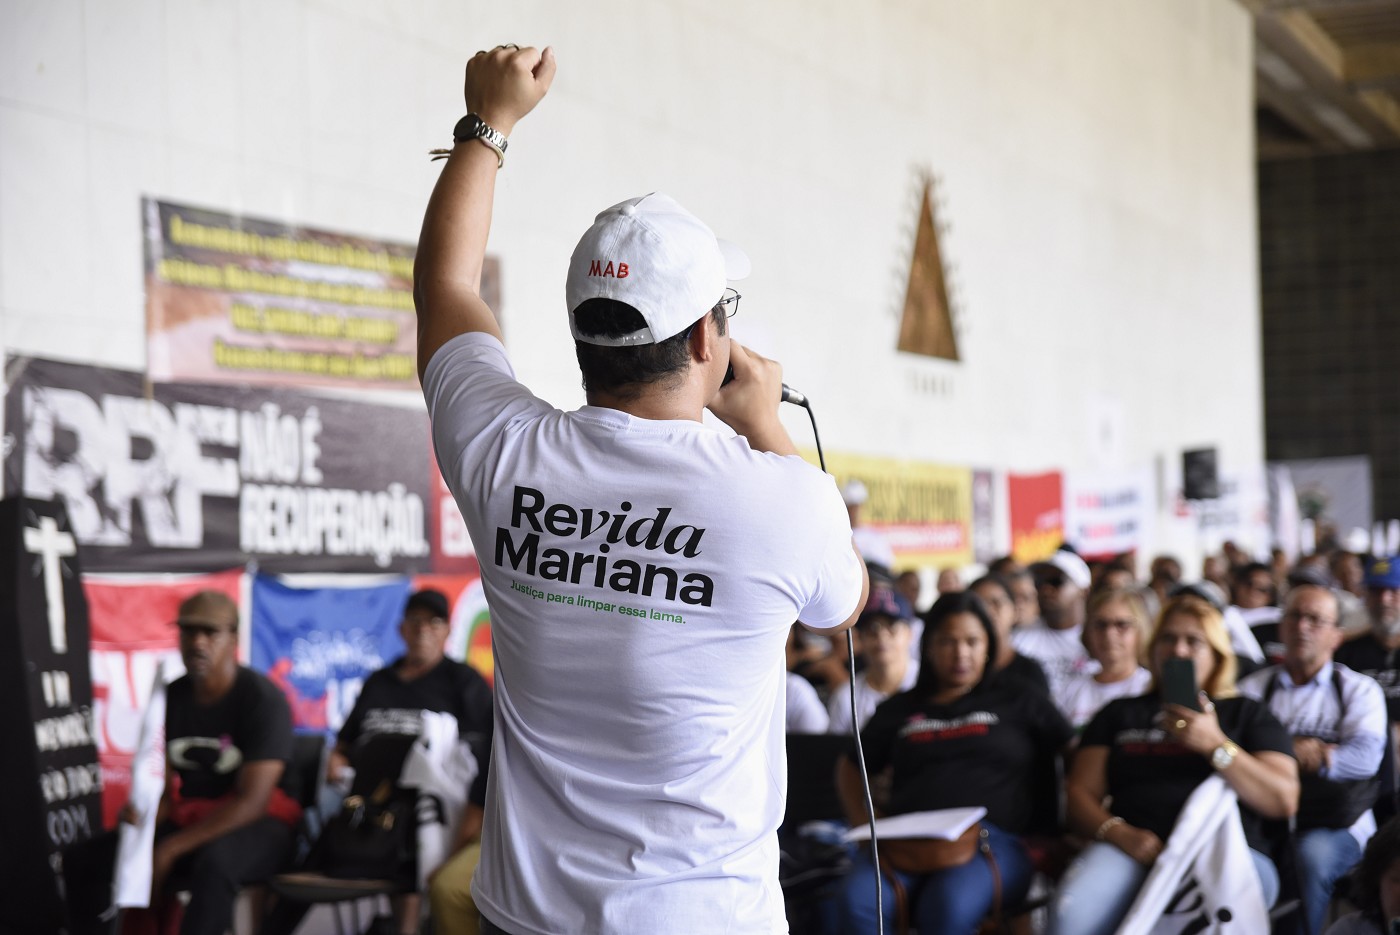 Comissão Extraordinária de Acompanhamento do Acordo de Mariana - lançamento da Campanha Revida Mariana